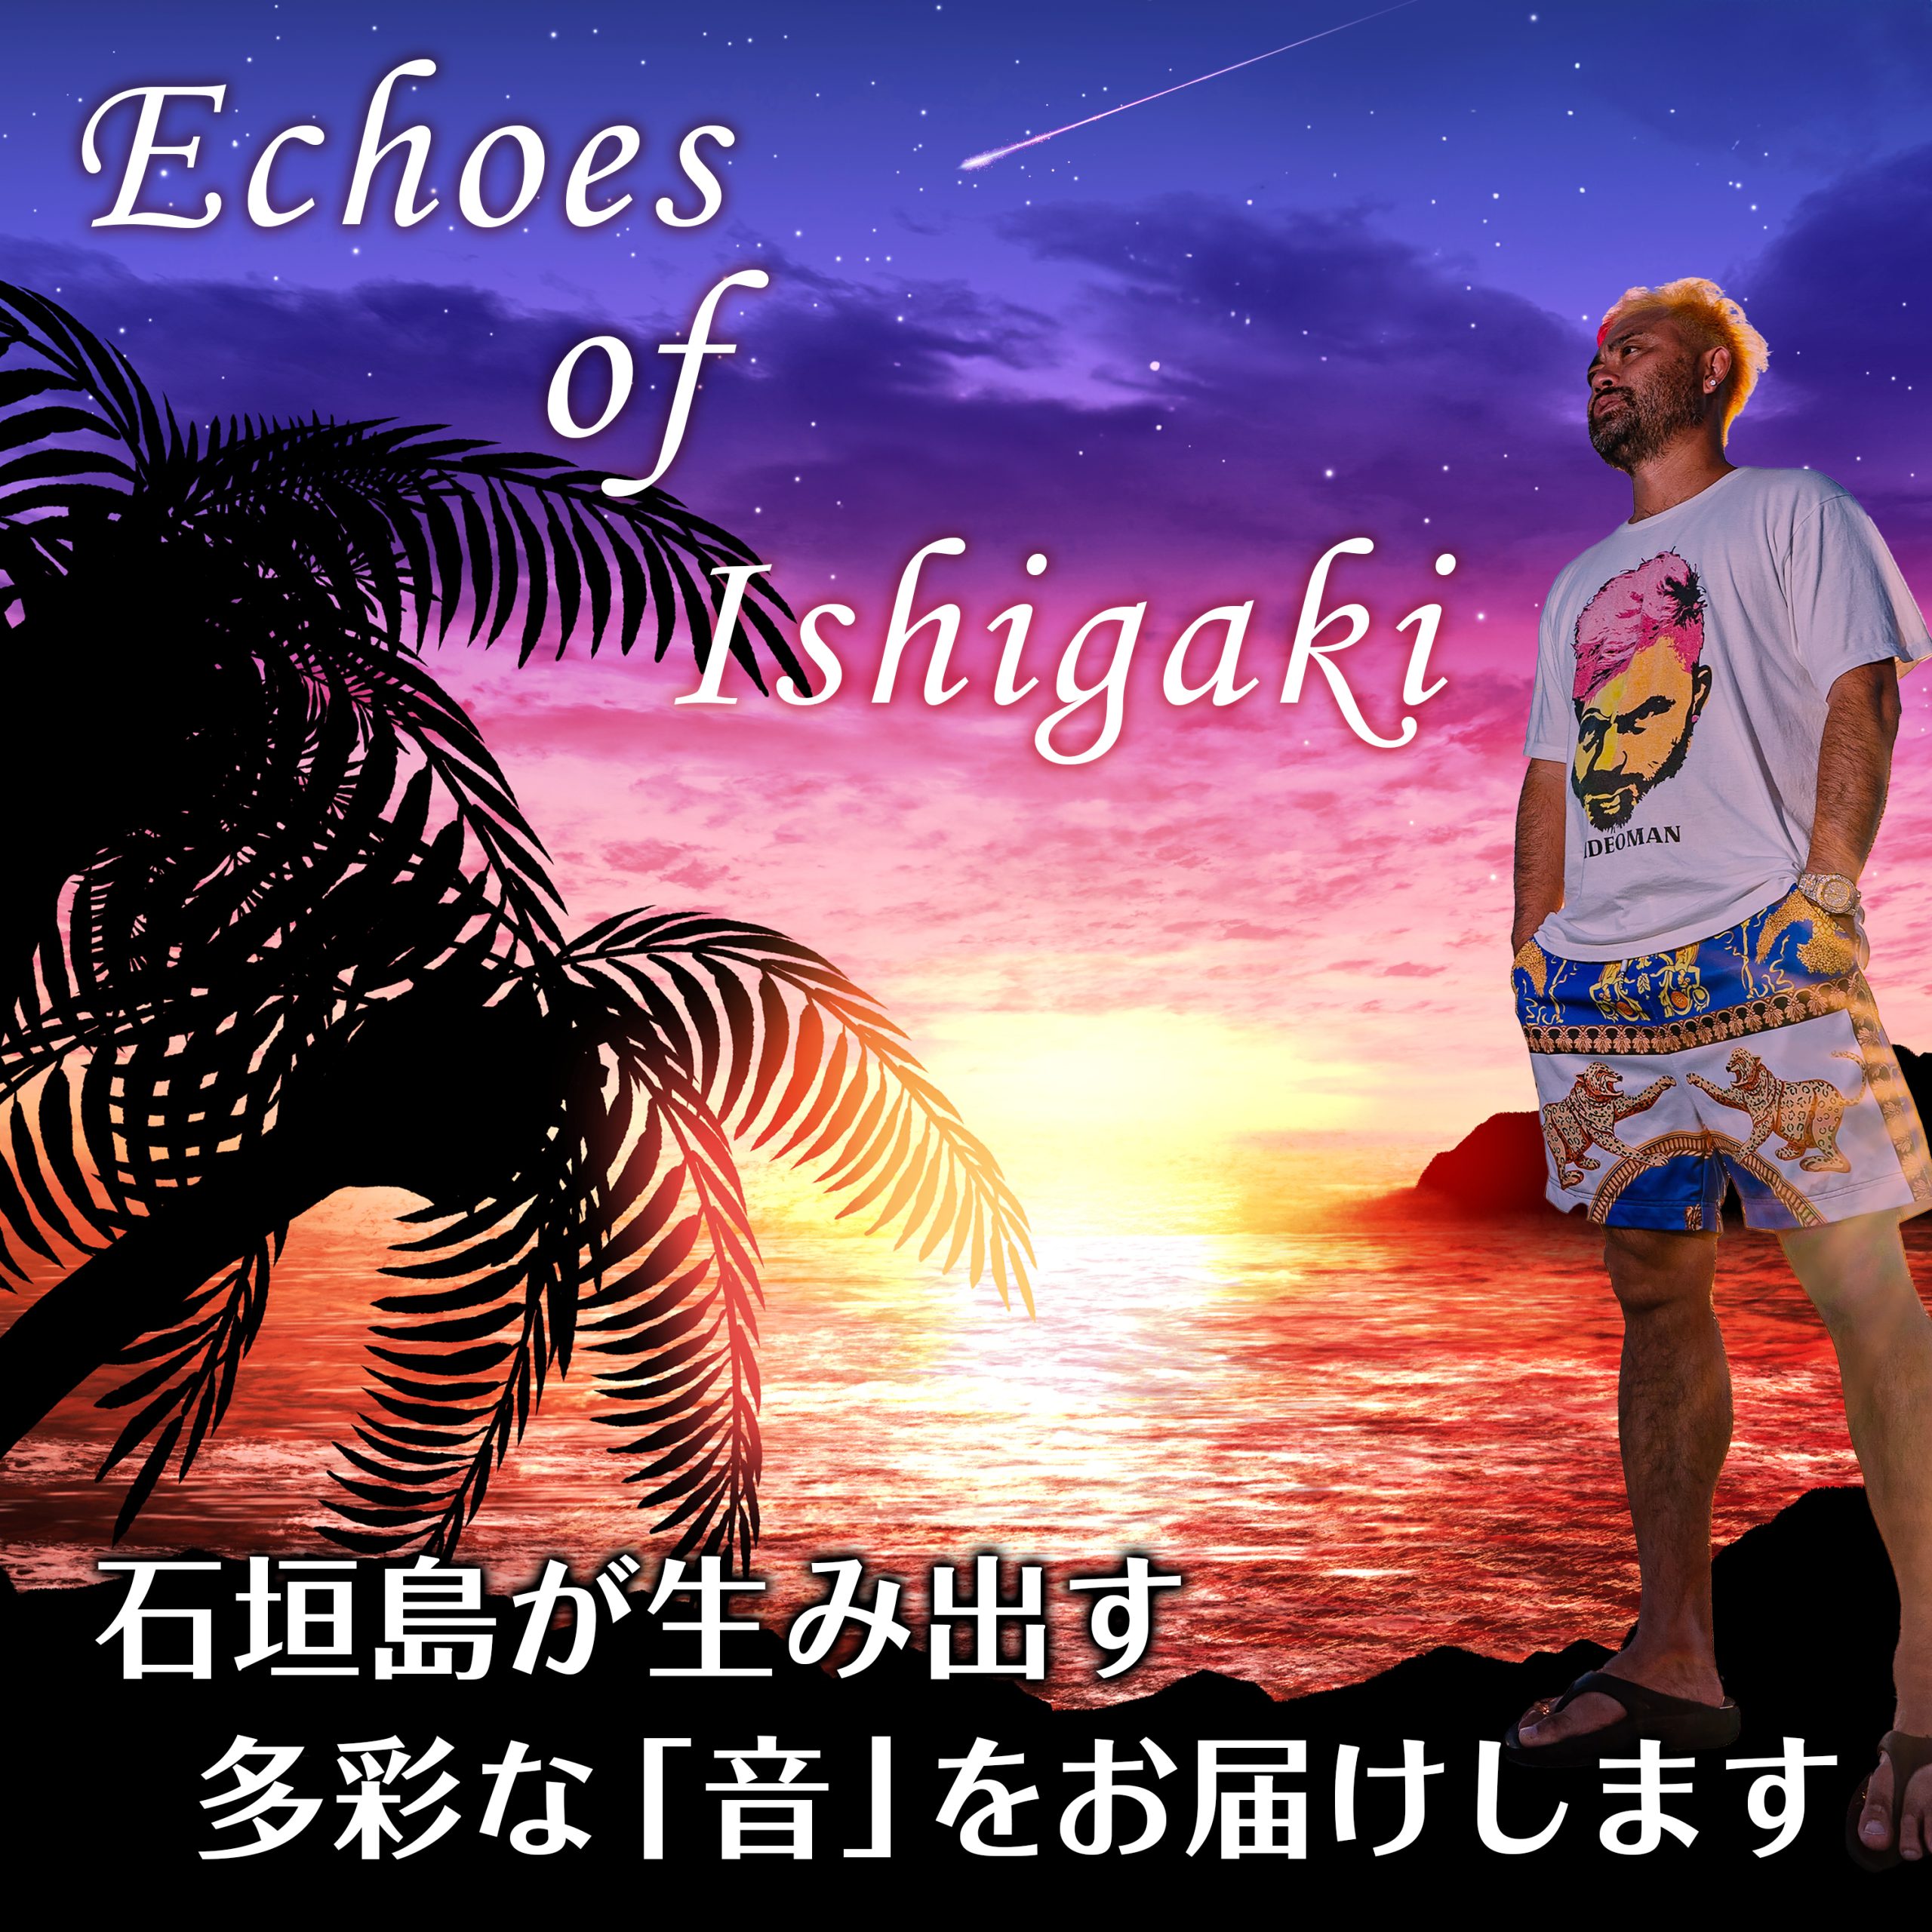 Echoes of Ishigaki